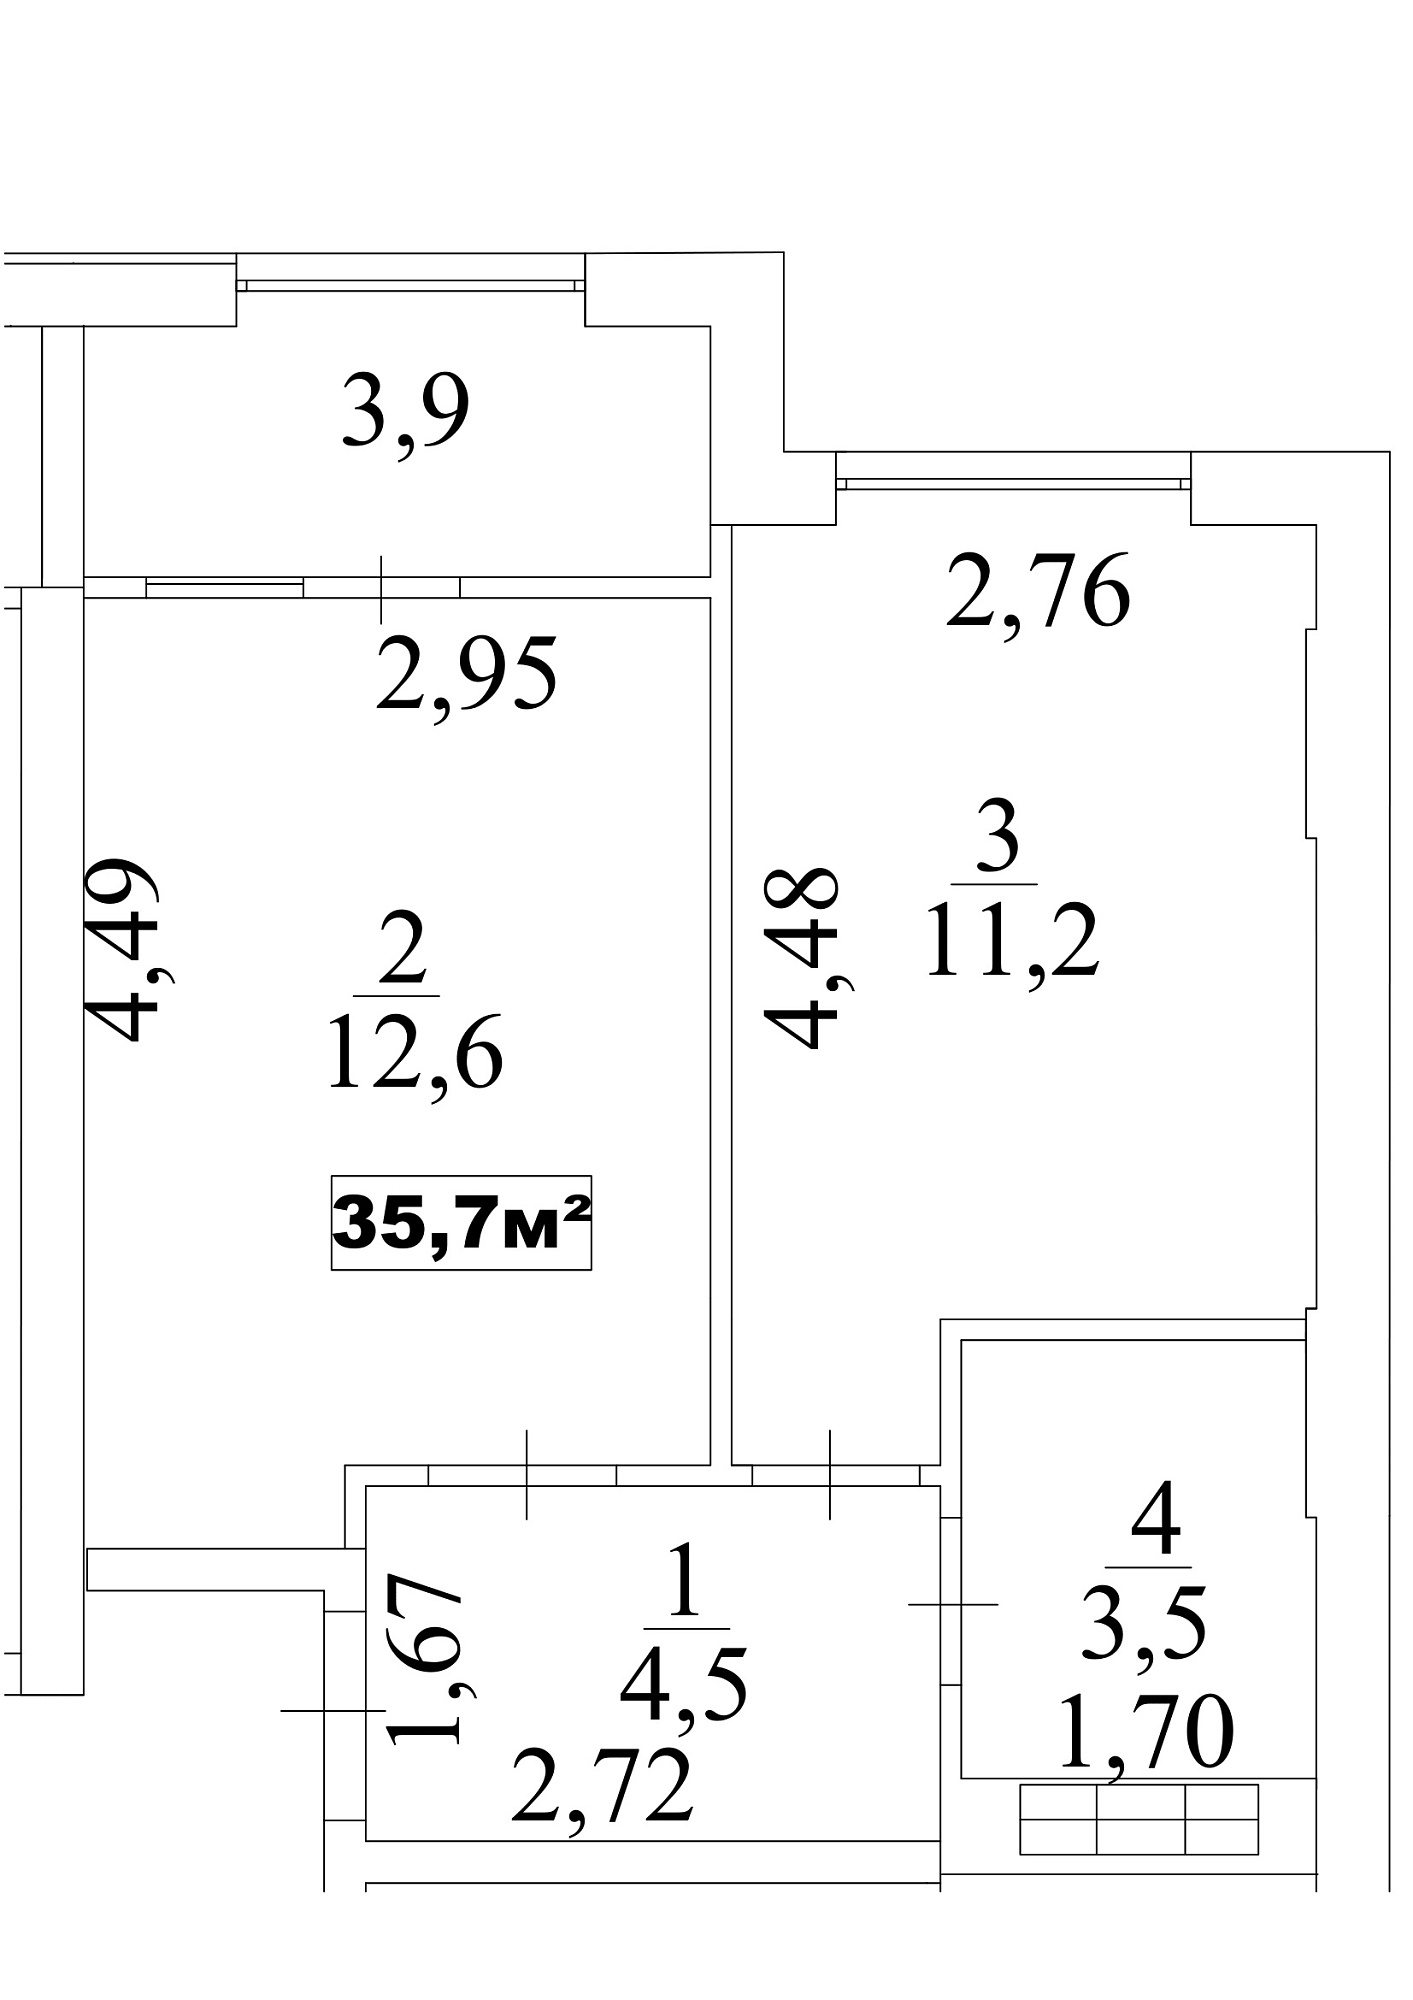 Планування 1-к квартира площею 35.7м2, AB-10-10/0088б.